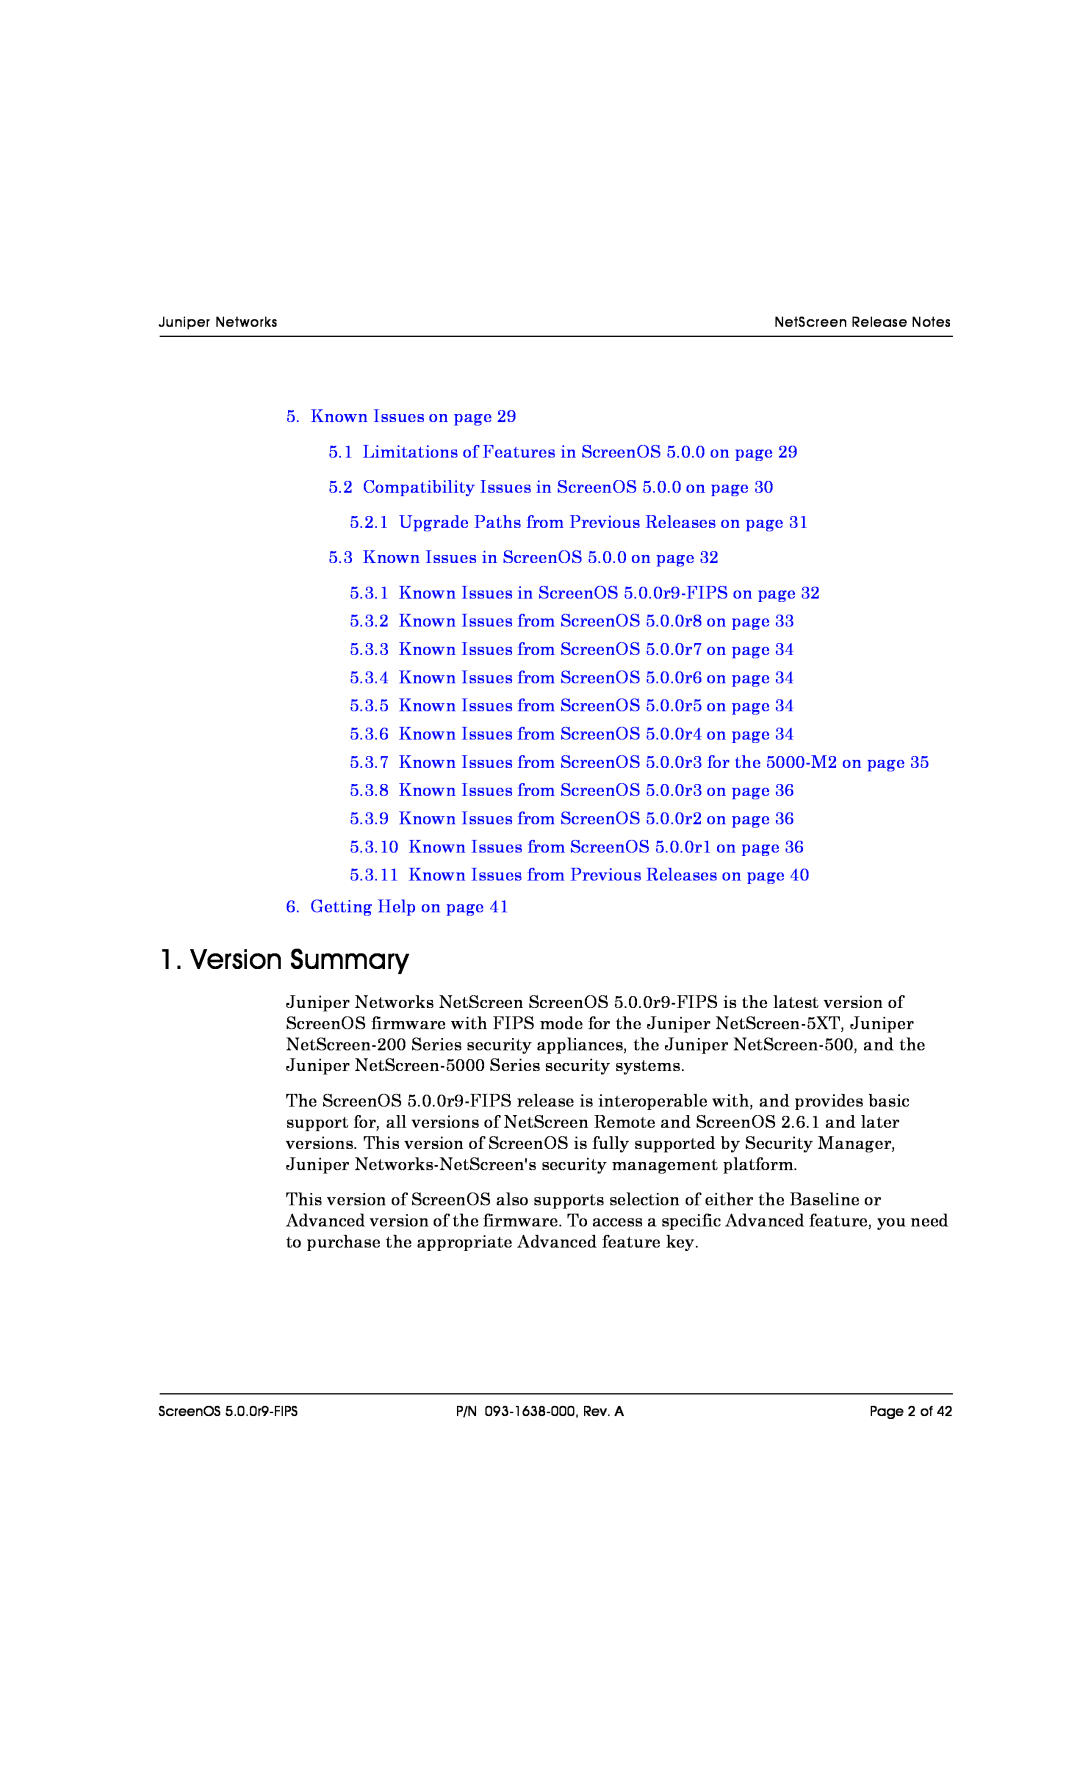 Juniper Networks 204, 5200, 208, 500, 5XT, 5400 manual Version Summary 